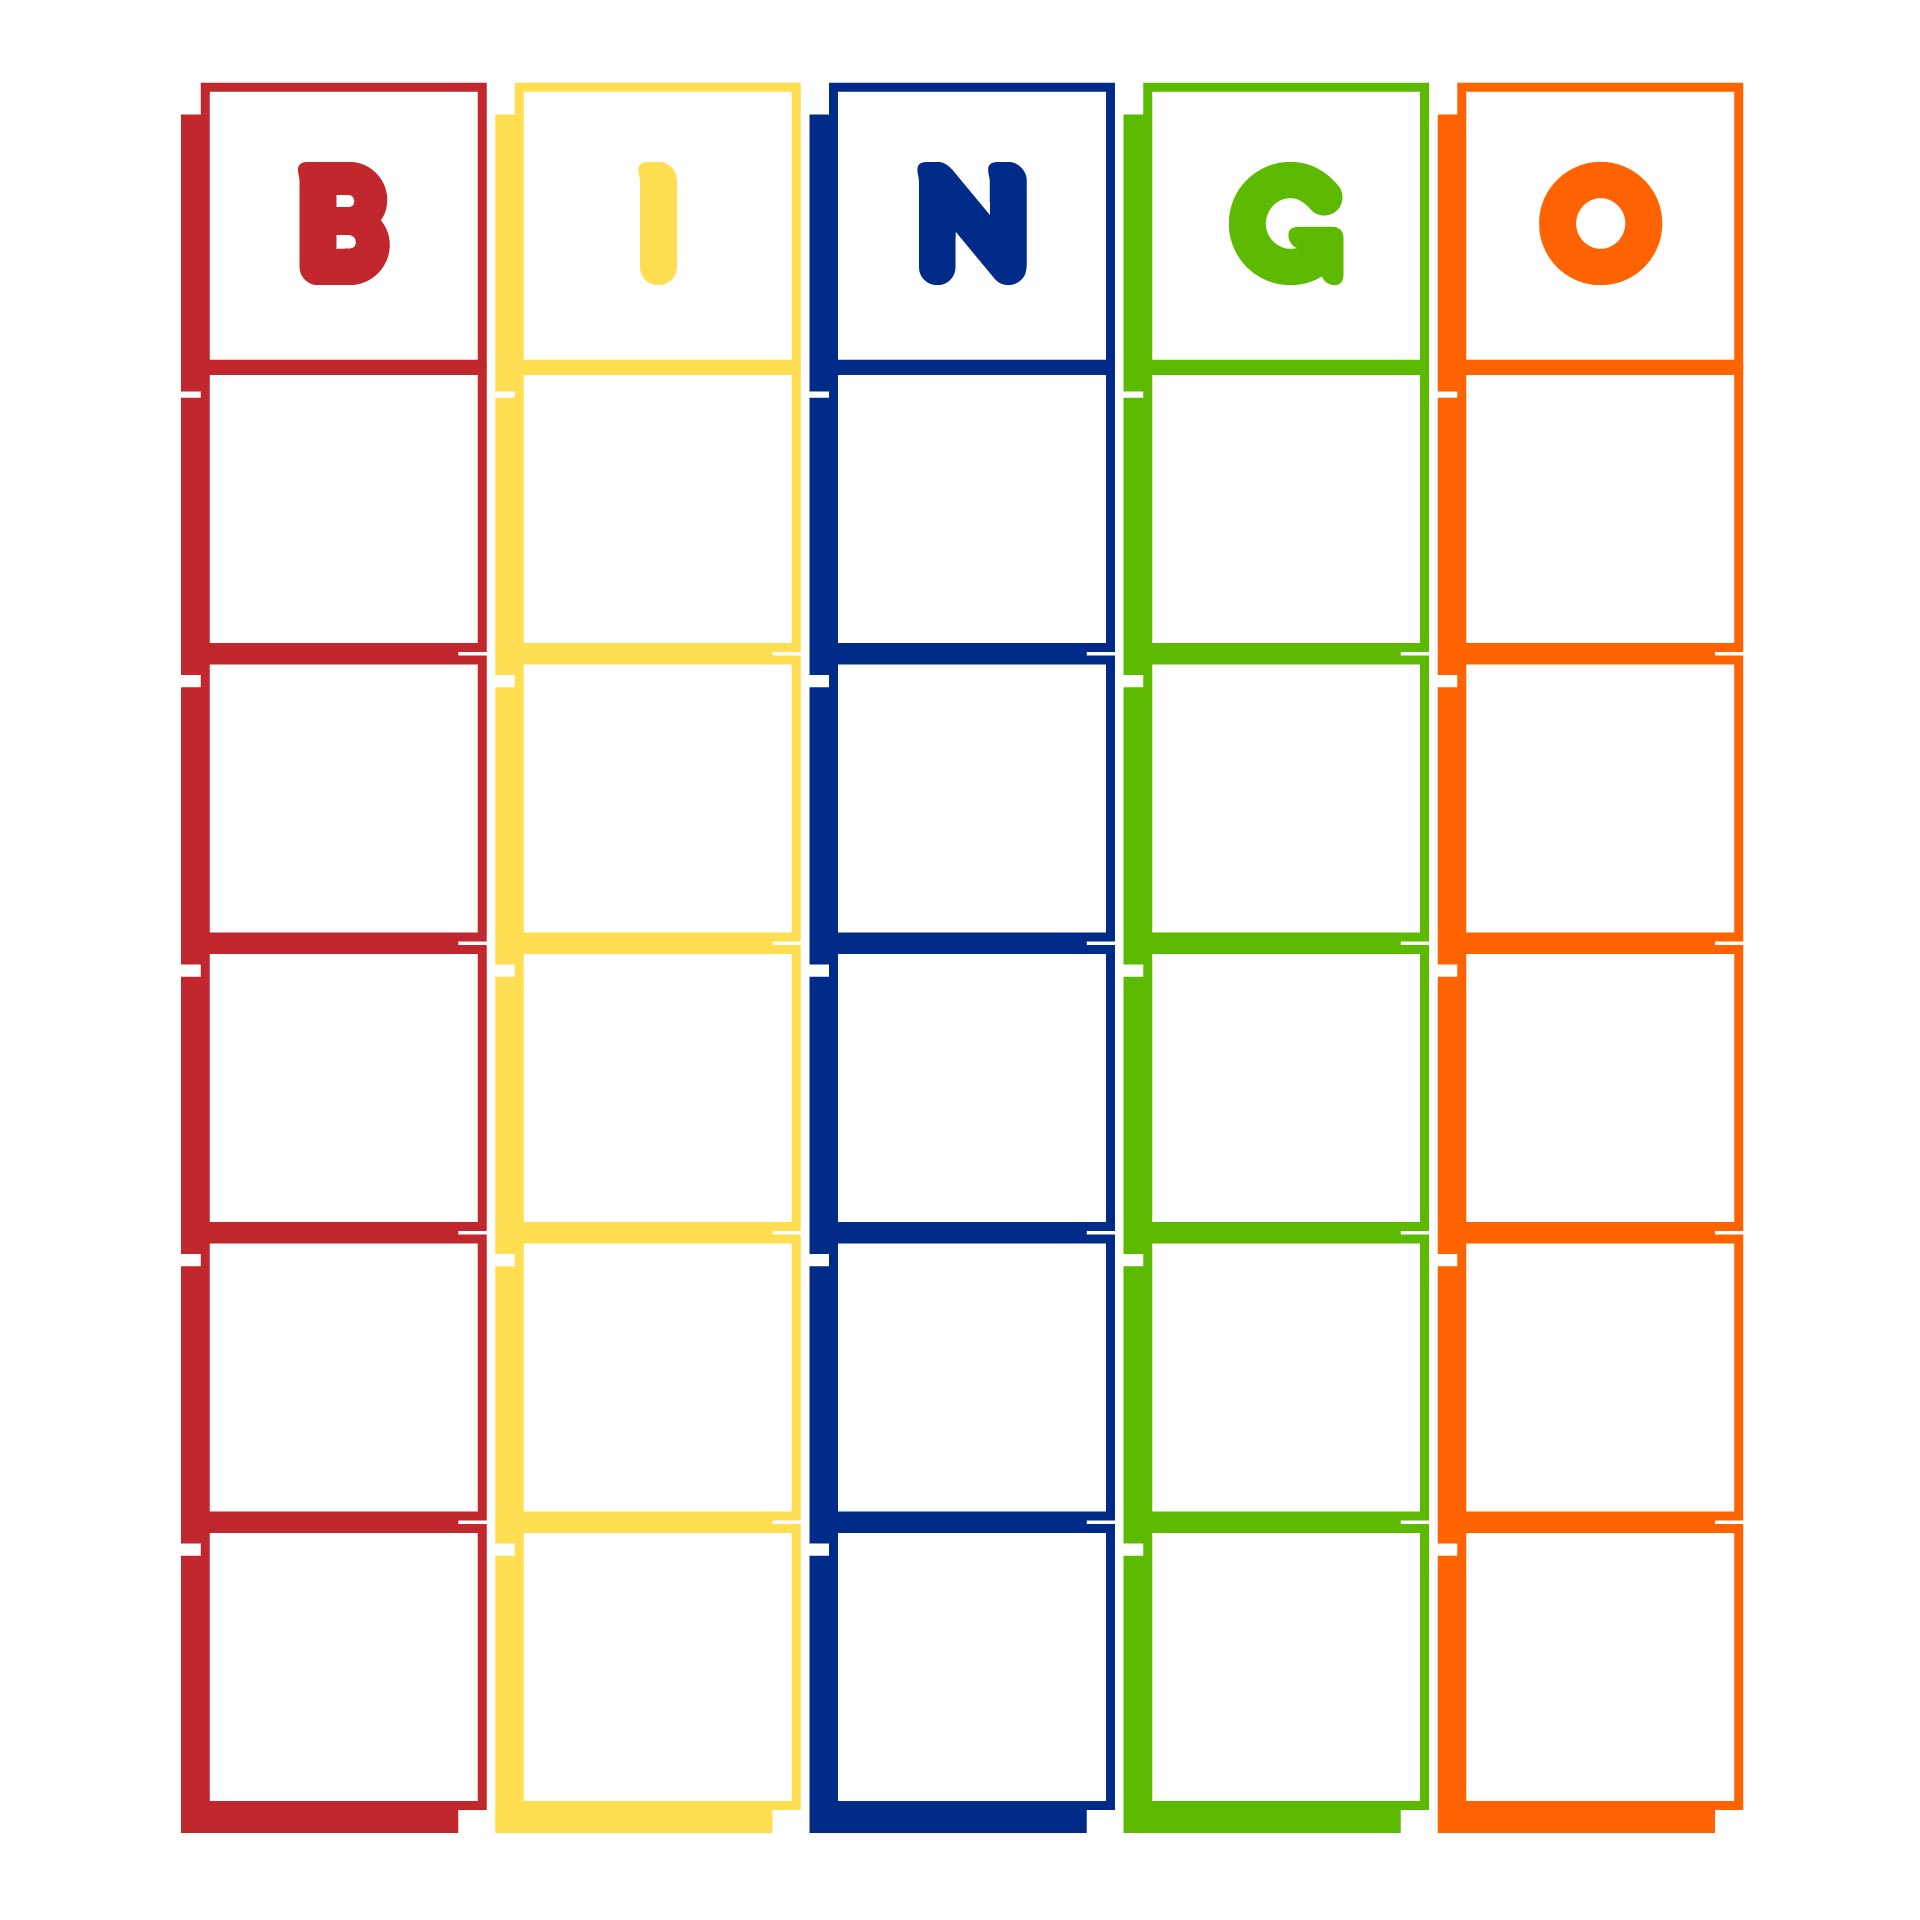 Blank Bingo Template Printable Printable World Holiday